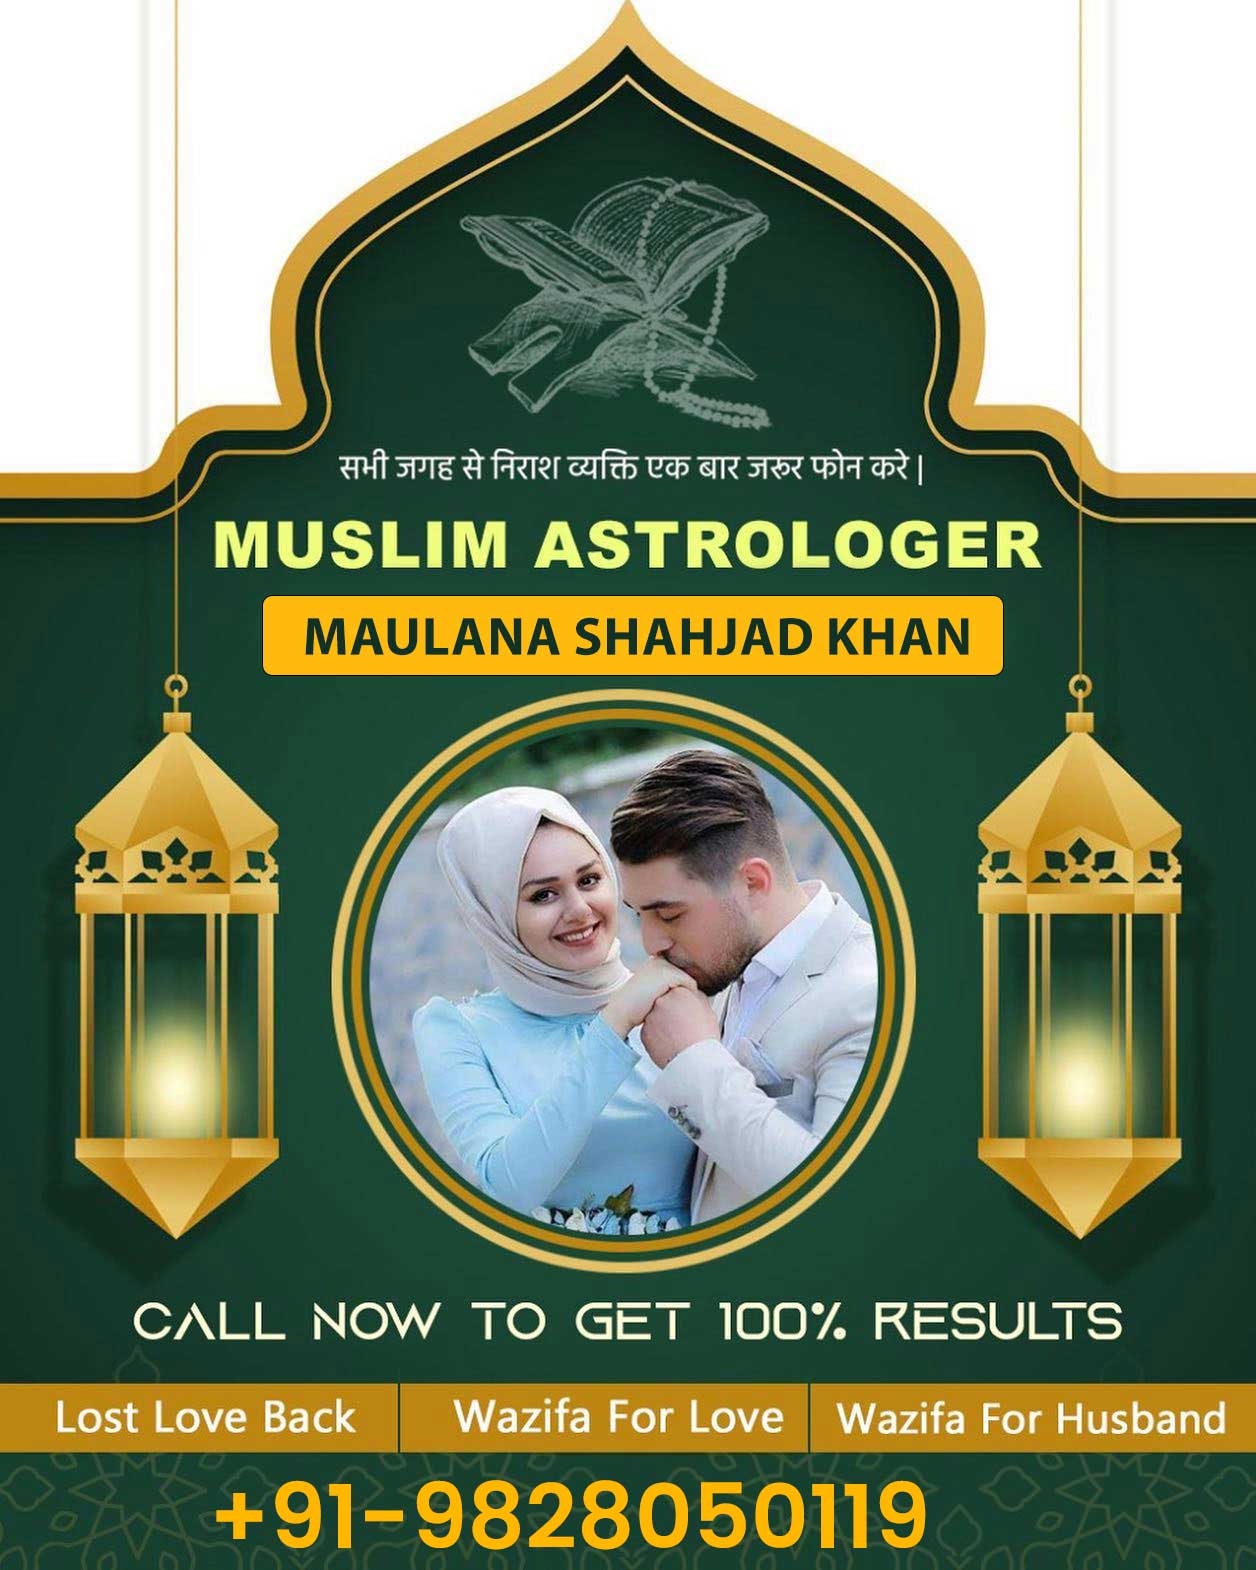 Best Muslim Astrologer in Oman